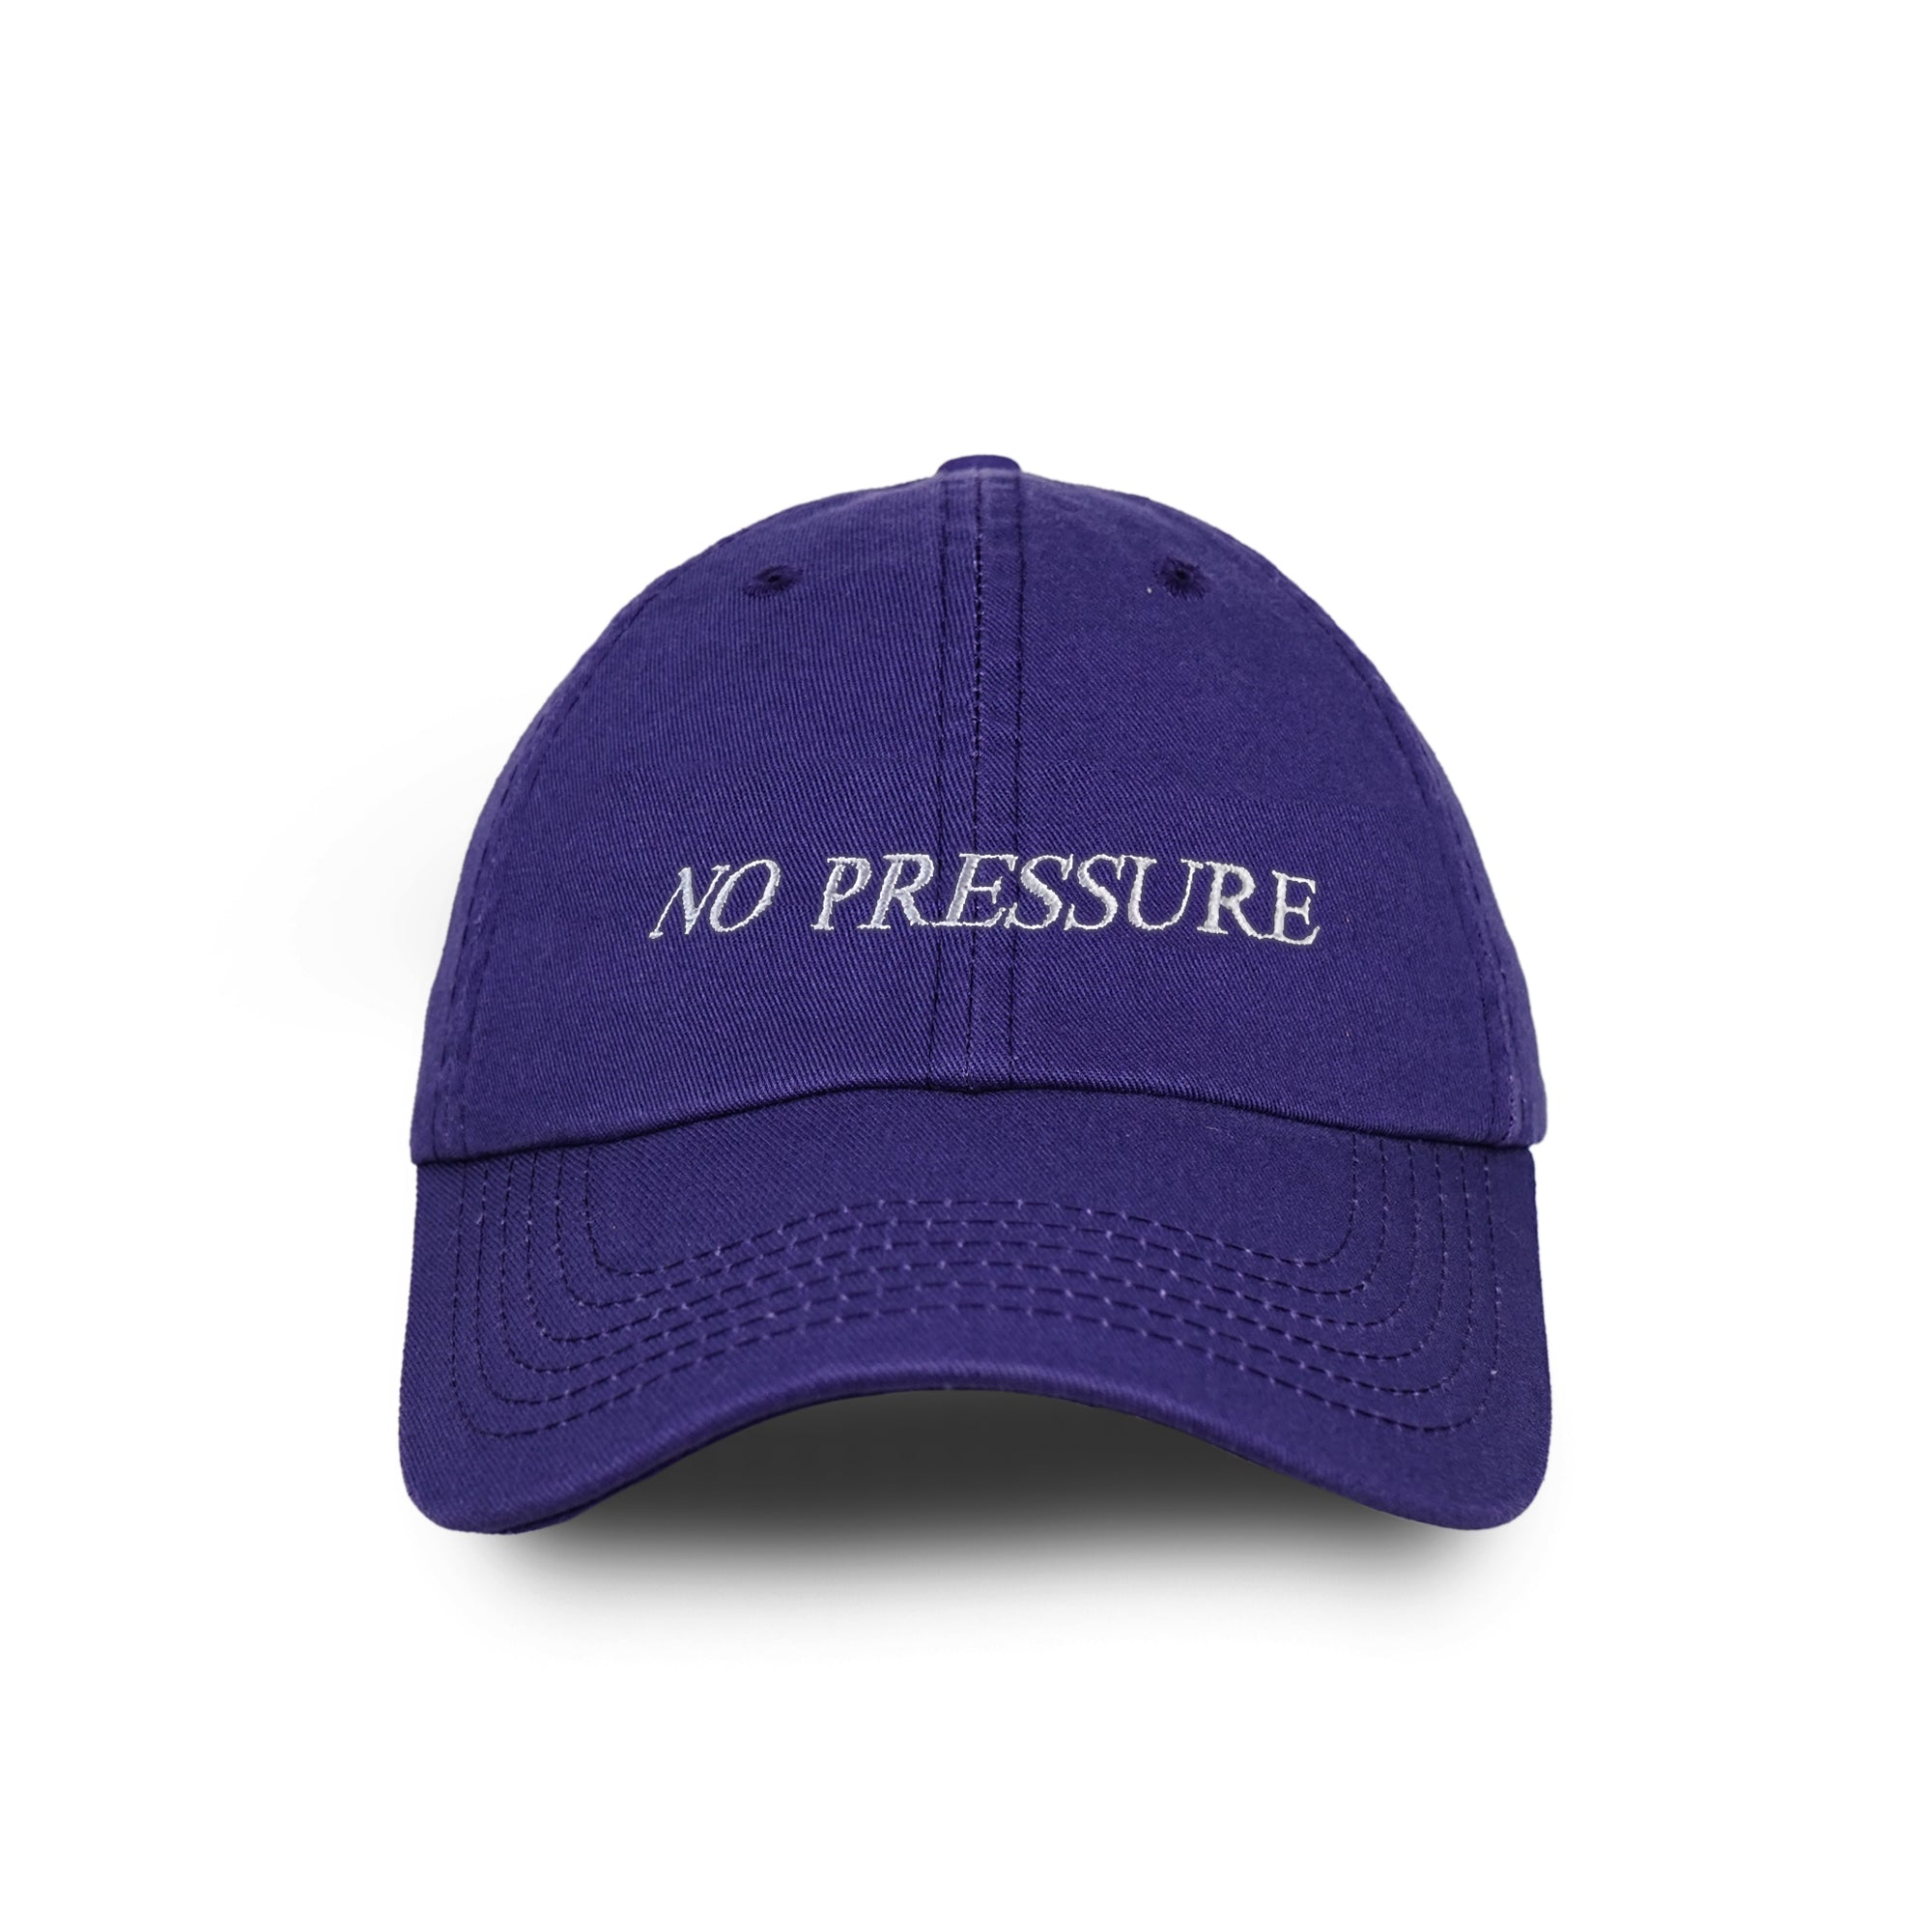 NO PRESSURE